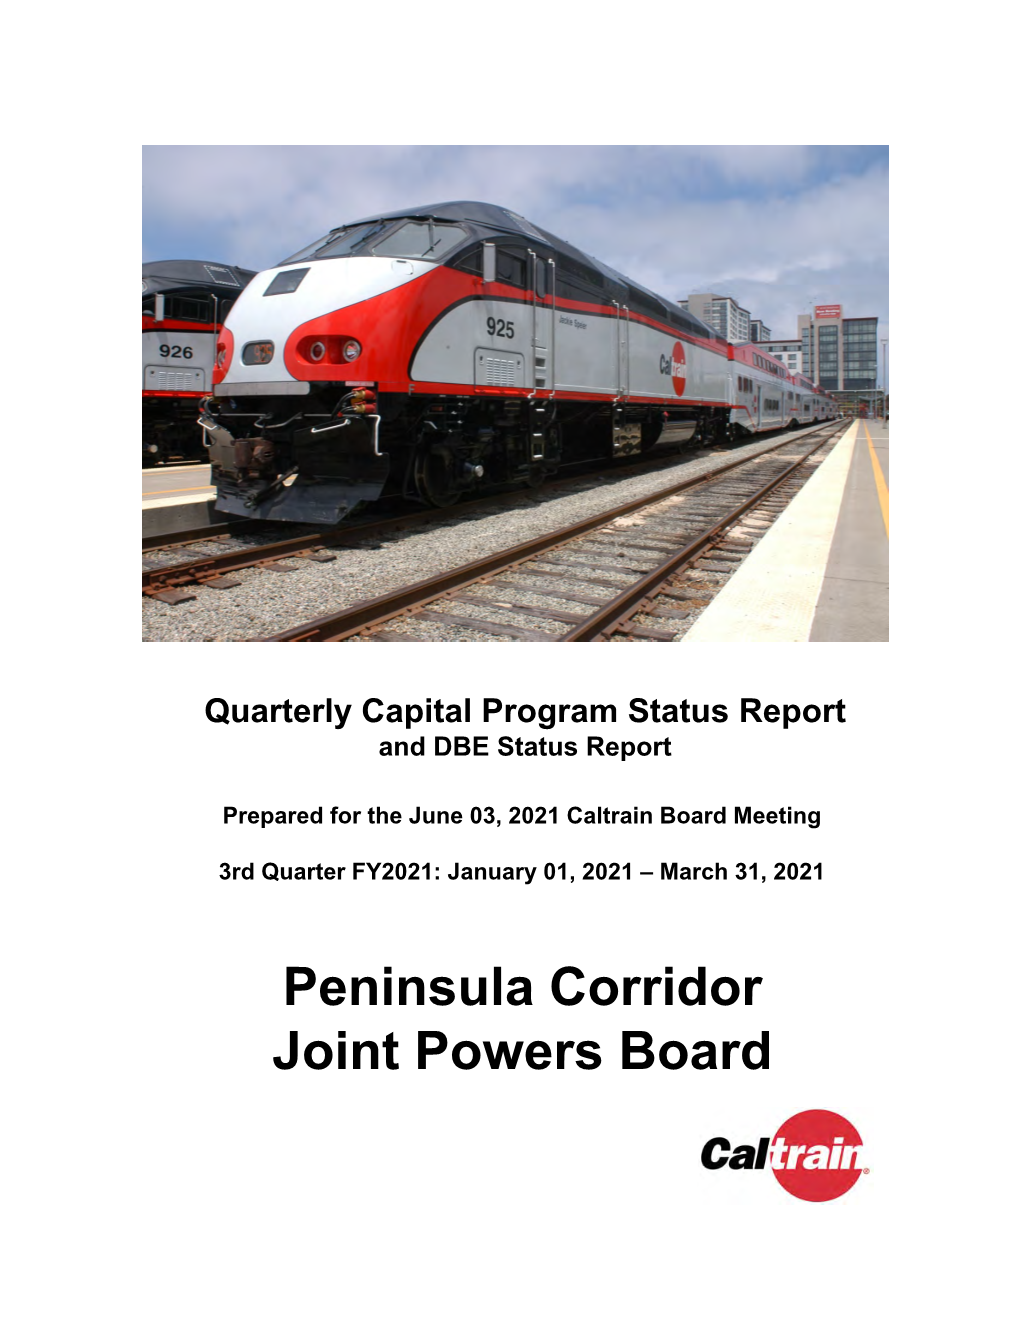 Peninsula Corridor Joint Powers Board